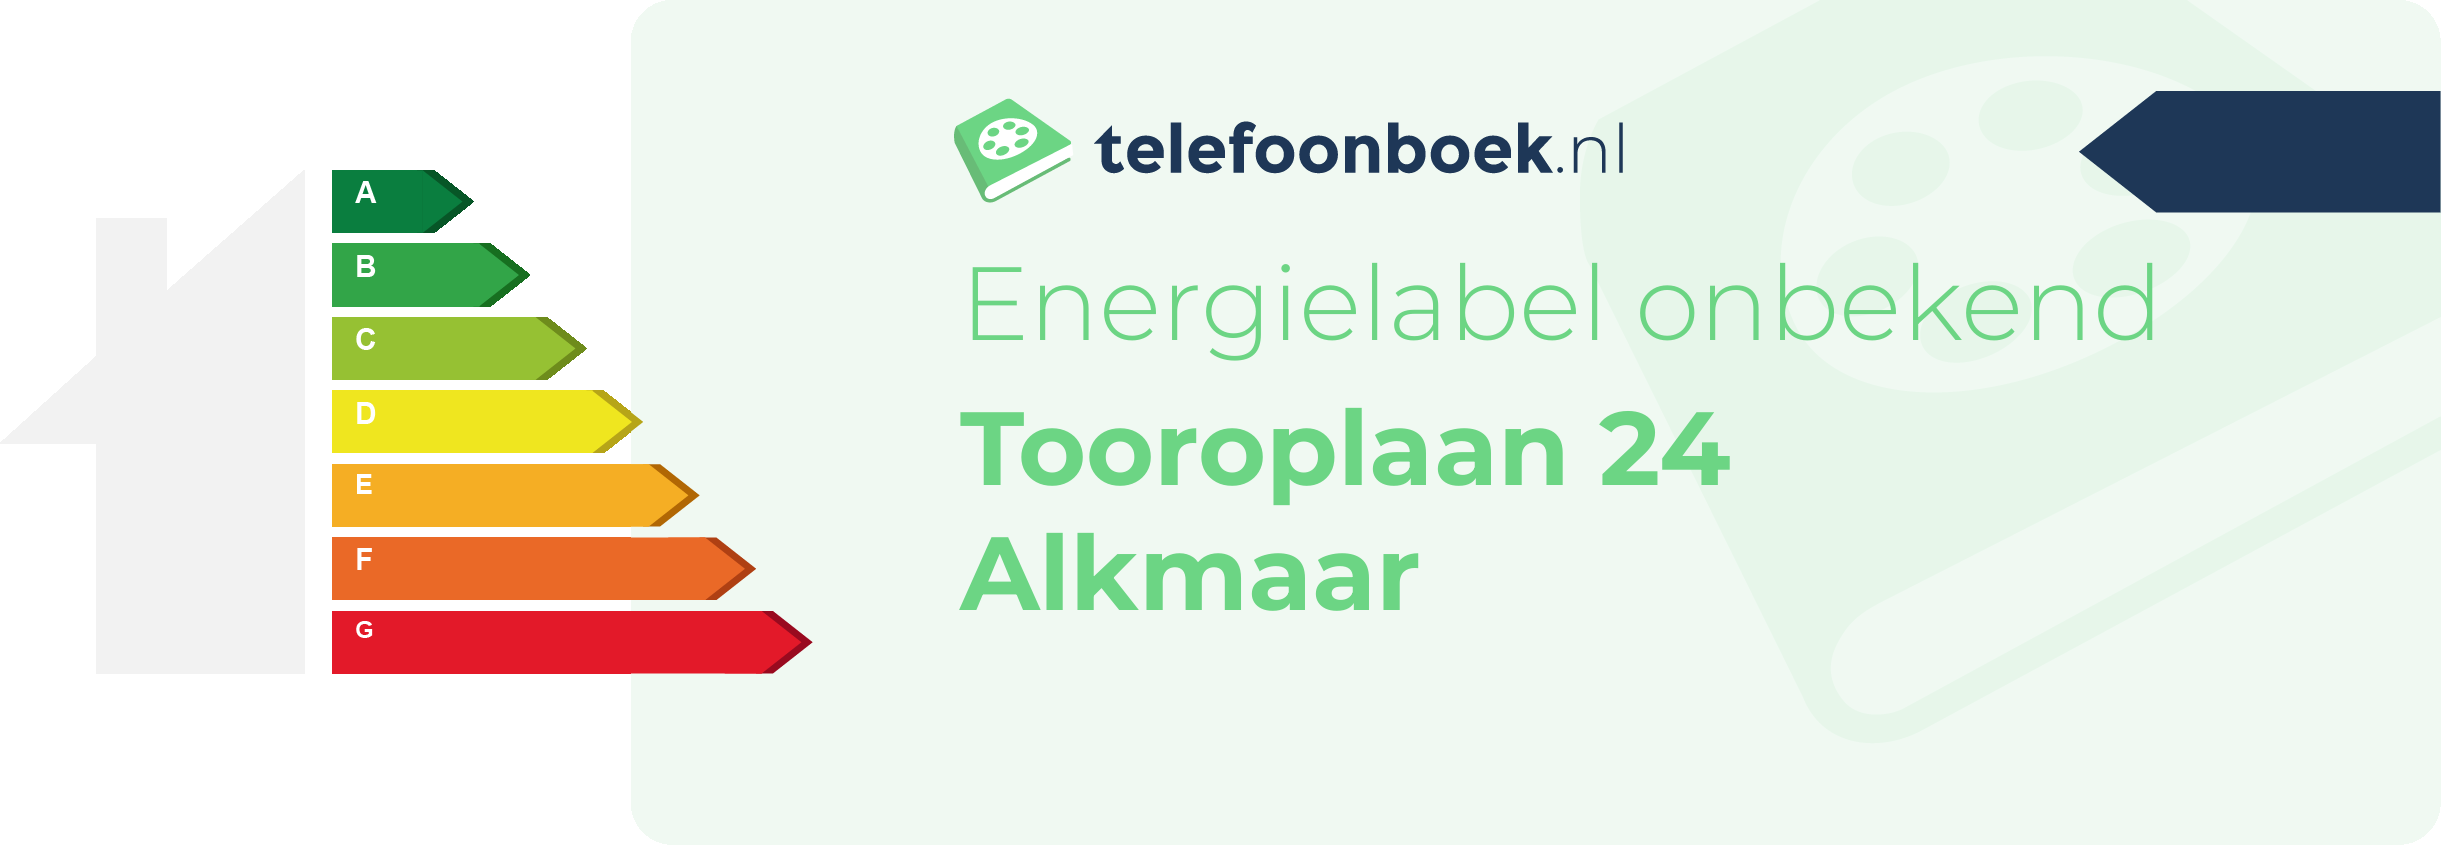 Energielabel Tooroplaan 24 Alkmaar